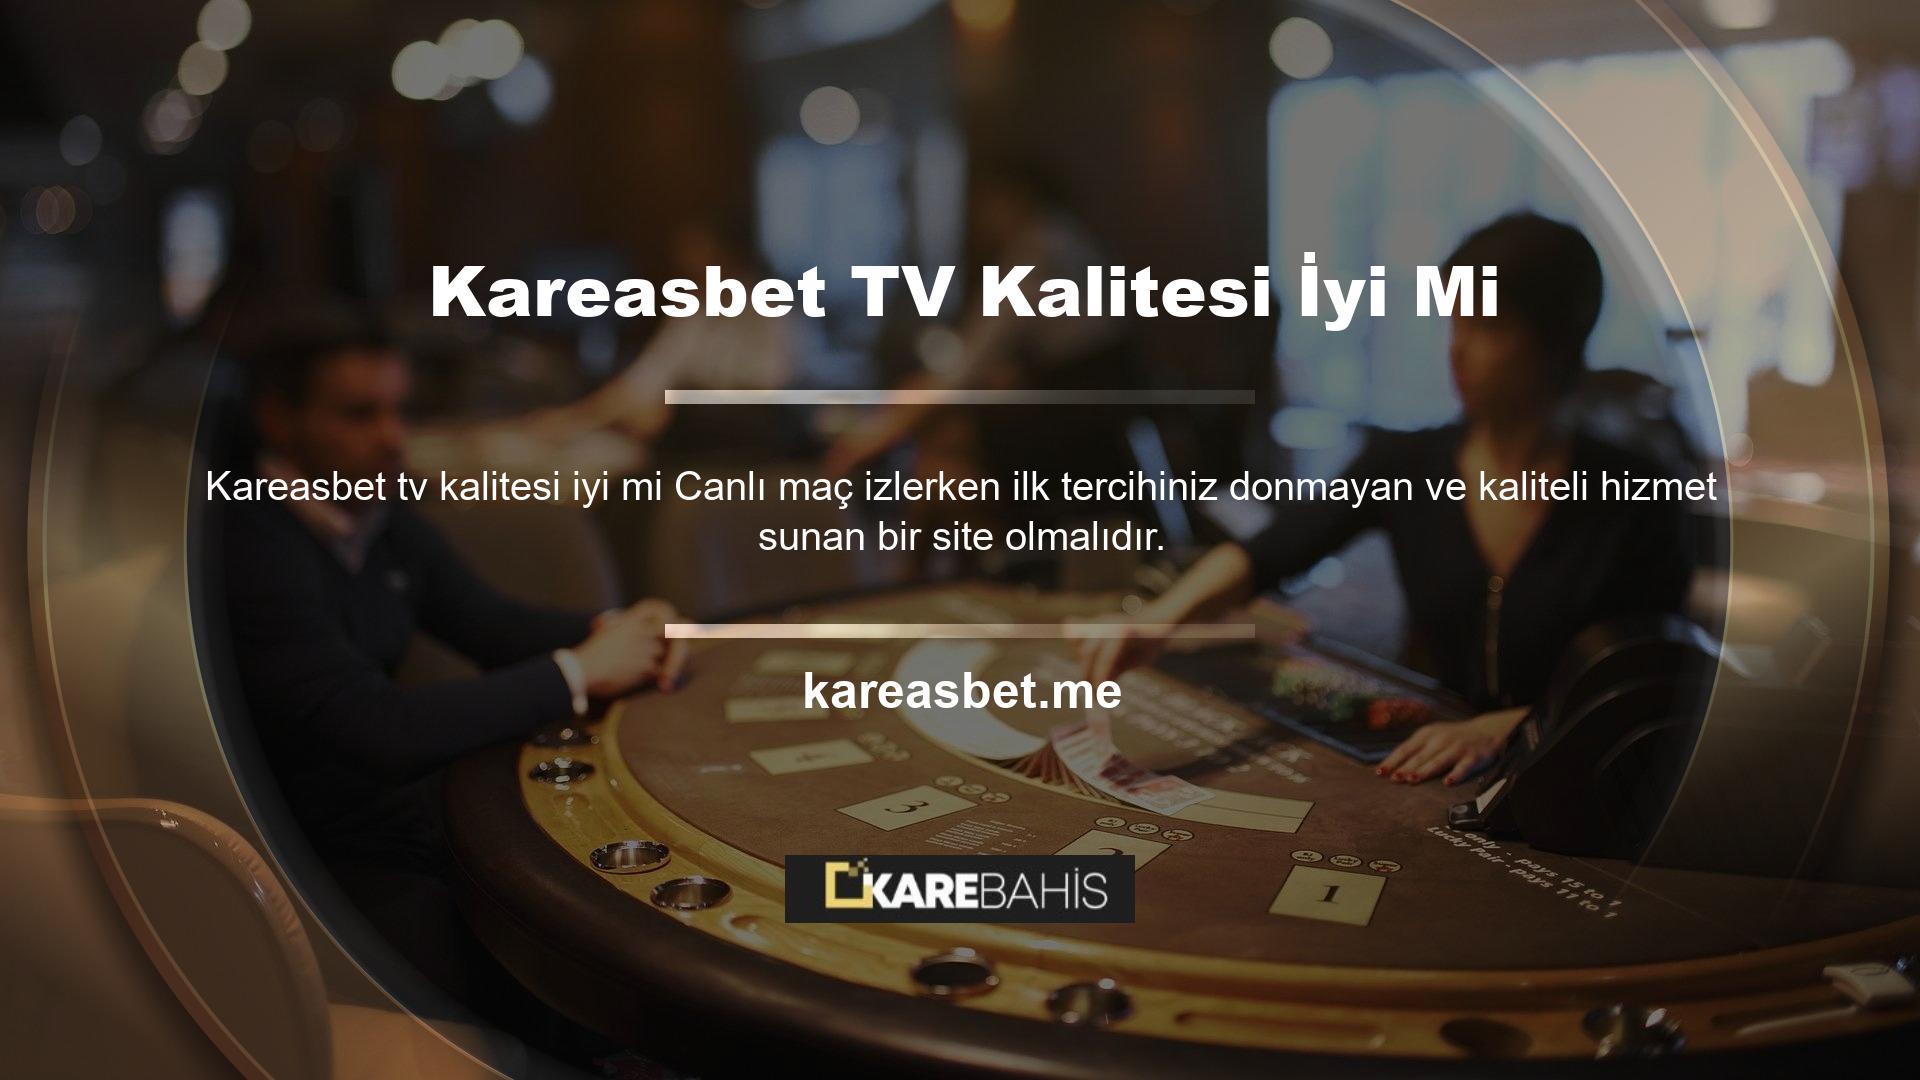 Kareasbet TV web sitesinde sunulan tüm hizmetler her zaman yüksek kalitede olduğunu kanıtlamıştır